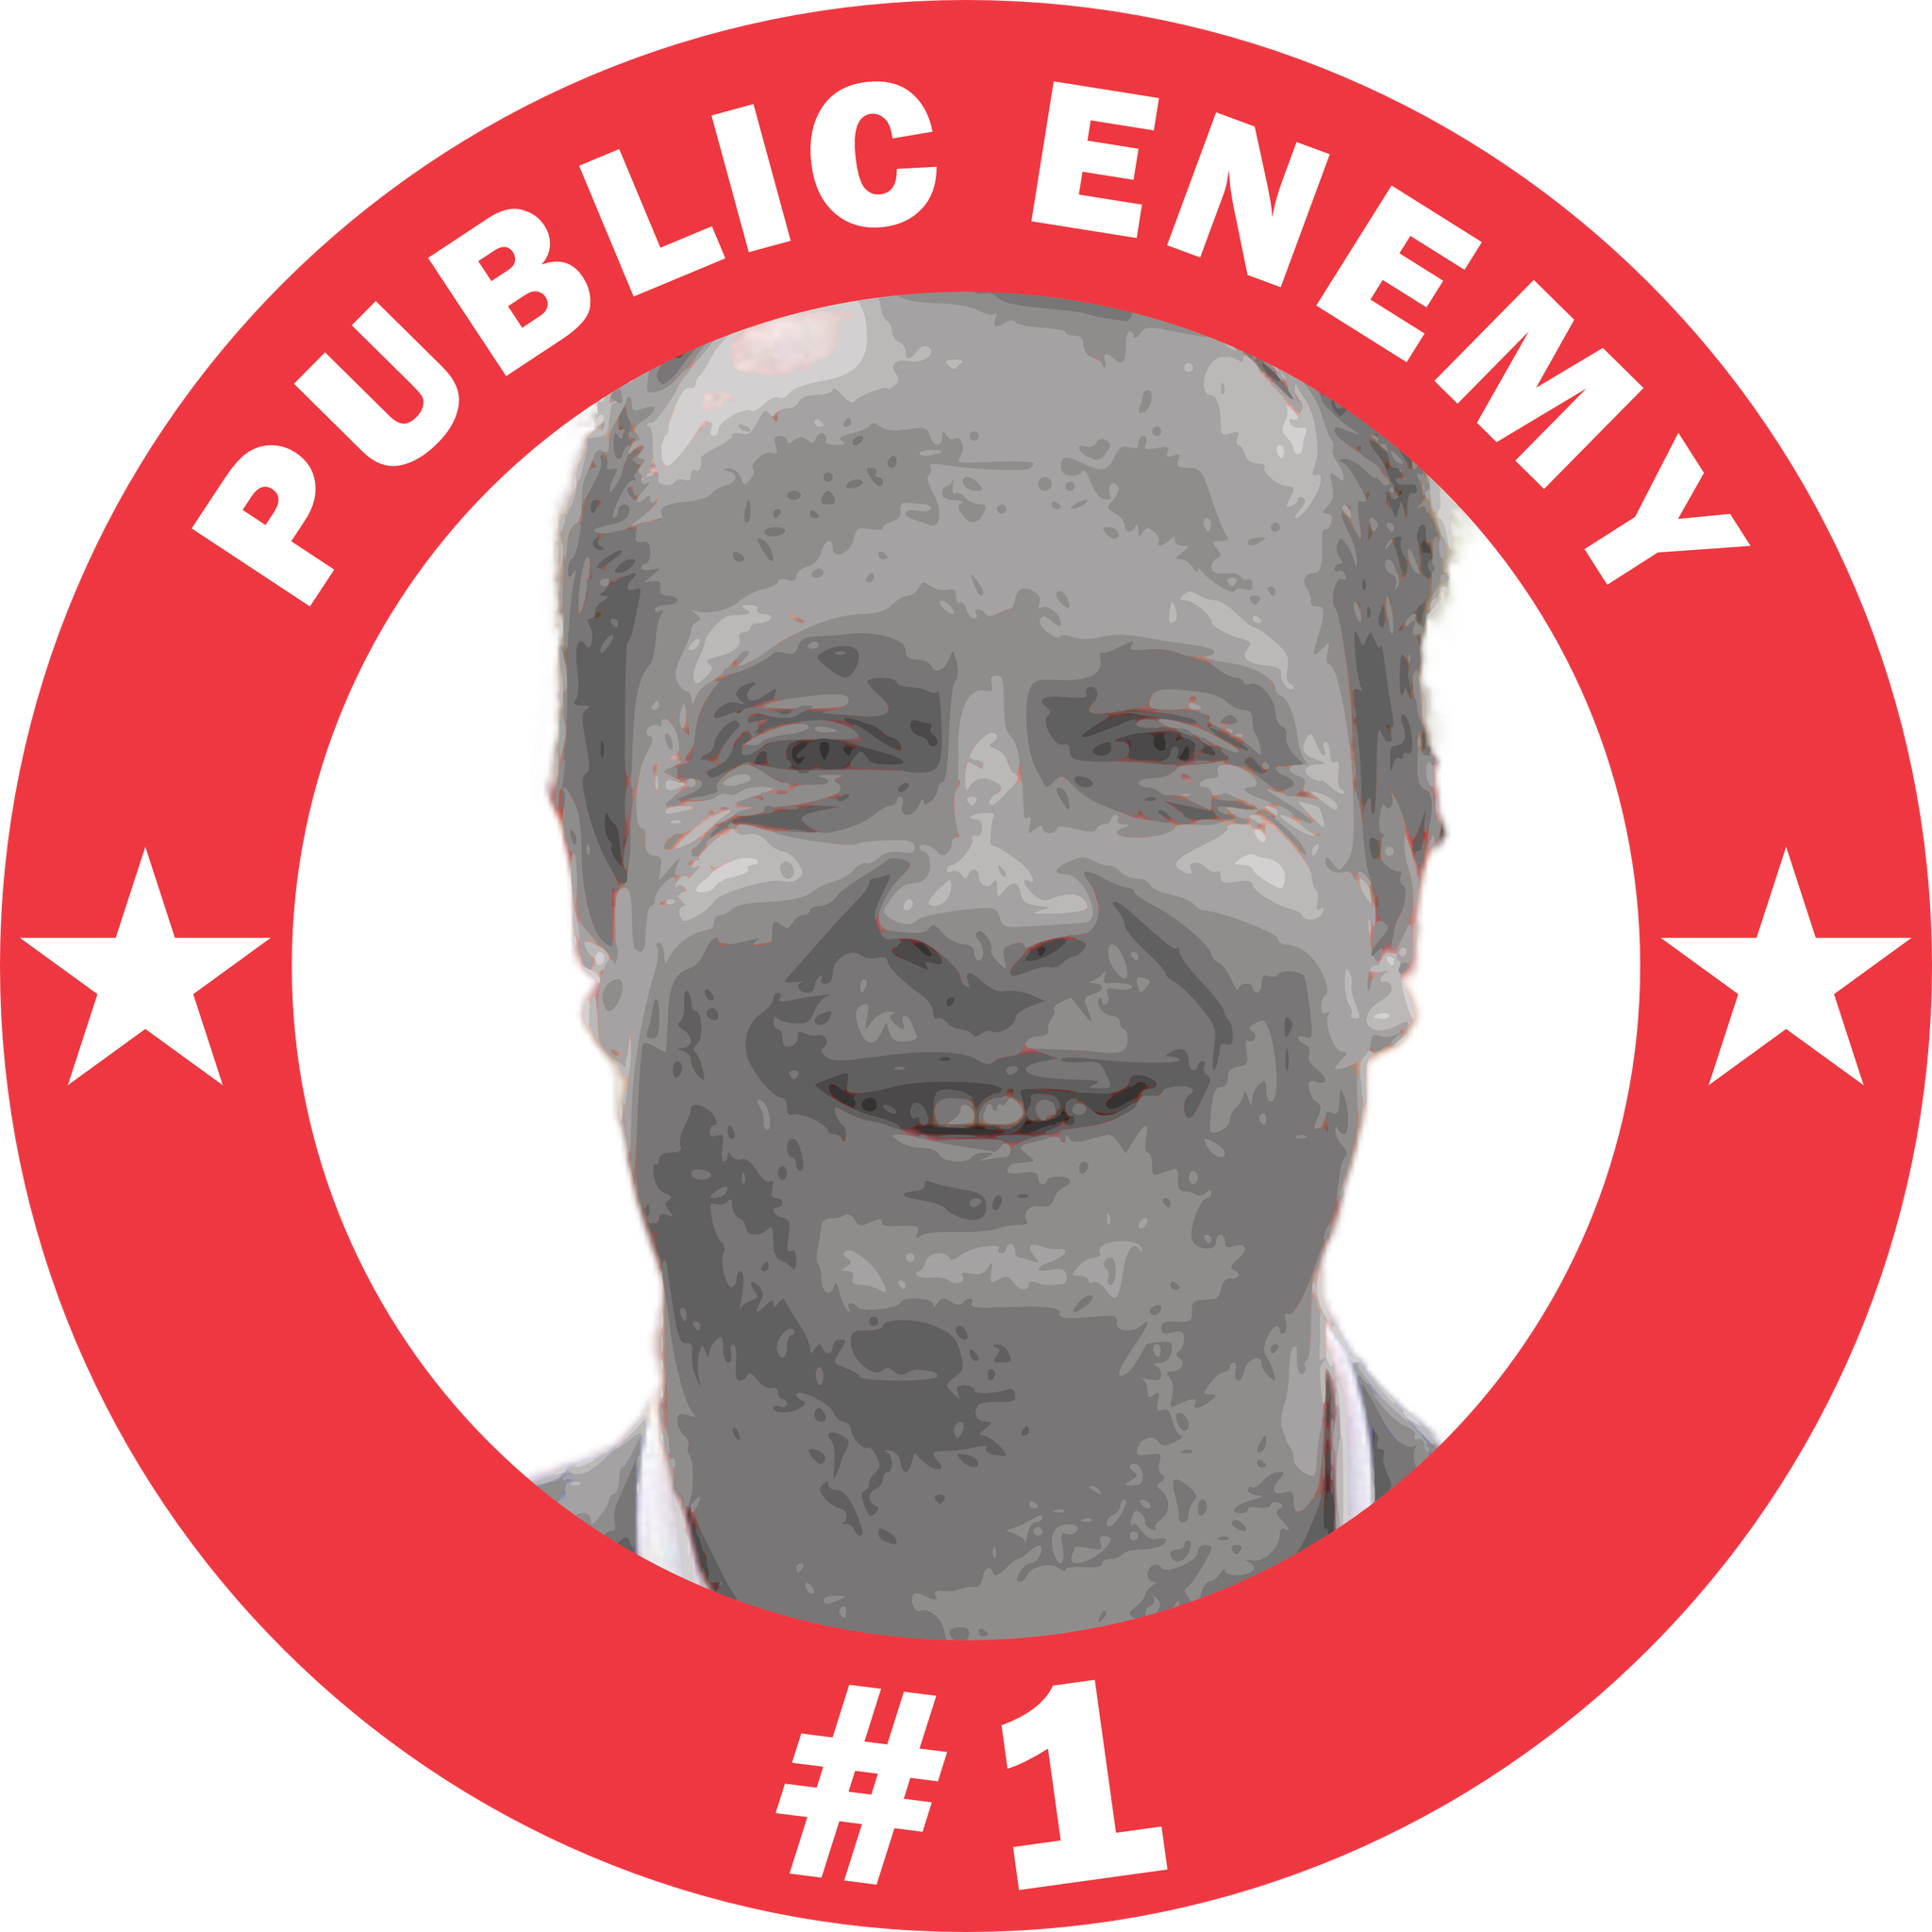 Ygeman Public Enemy #1 T-Shirt Dam